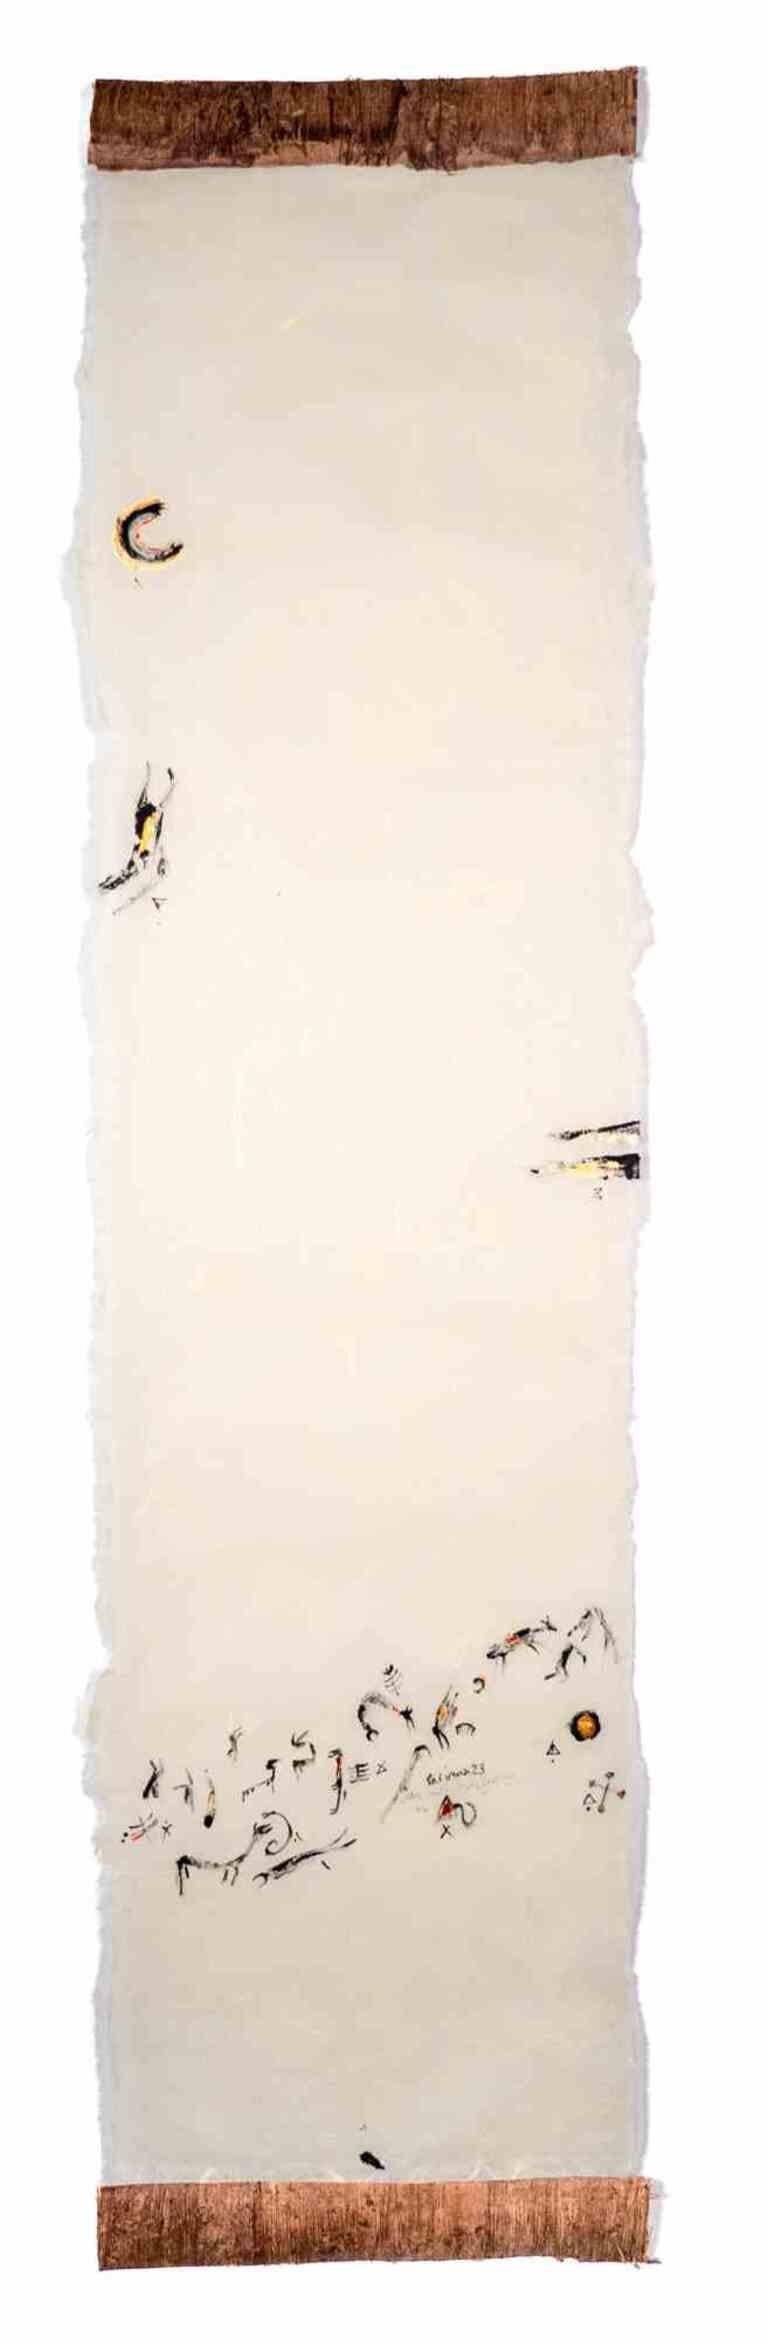 The First Day, First Dead ist eine Zeichnung der iranischen Künstlerin und Dichterin Parimah Avani aus dem Jahr 2023.

China-Tusche, Acryl auf japanischem Washi Haruki-Papier mit aufgetragenem Papyrus, Plettenberg, DE.

Ausgestellt in "Heroine's